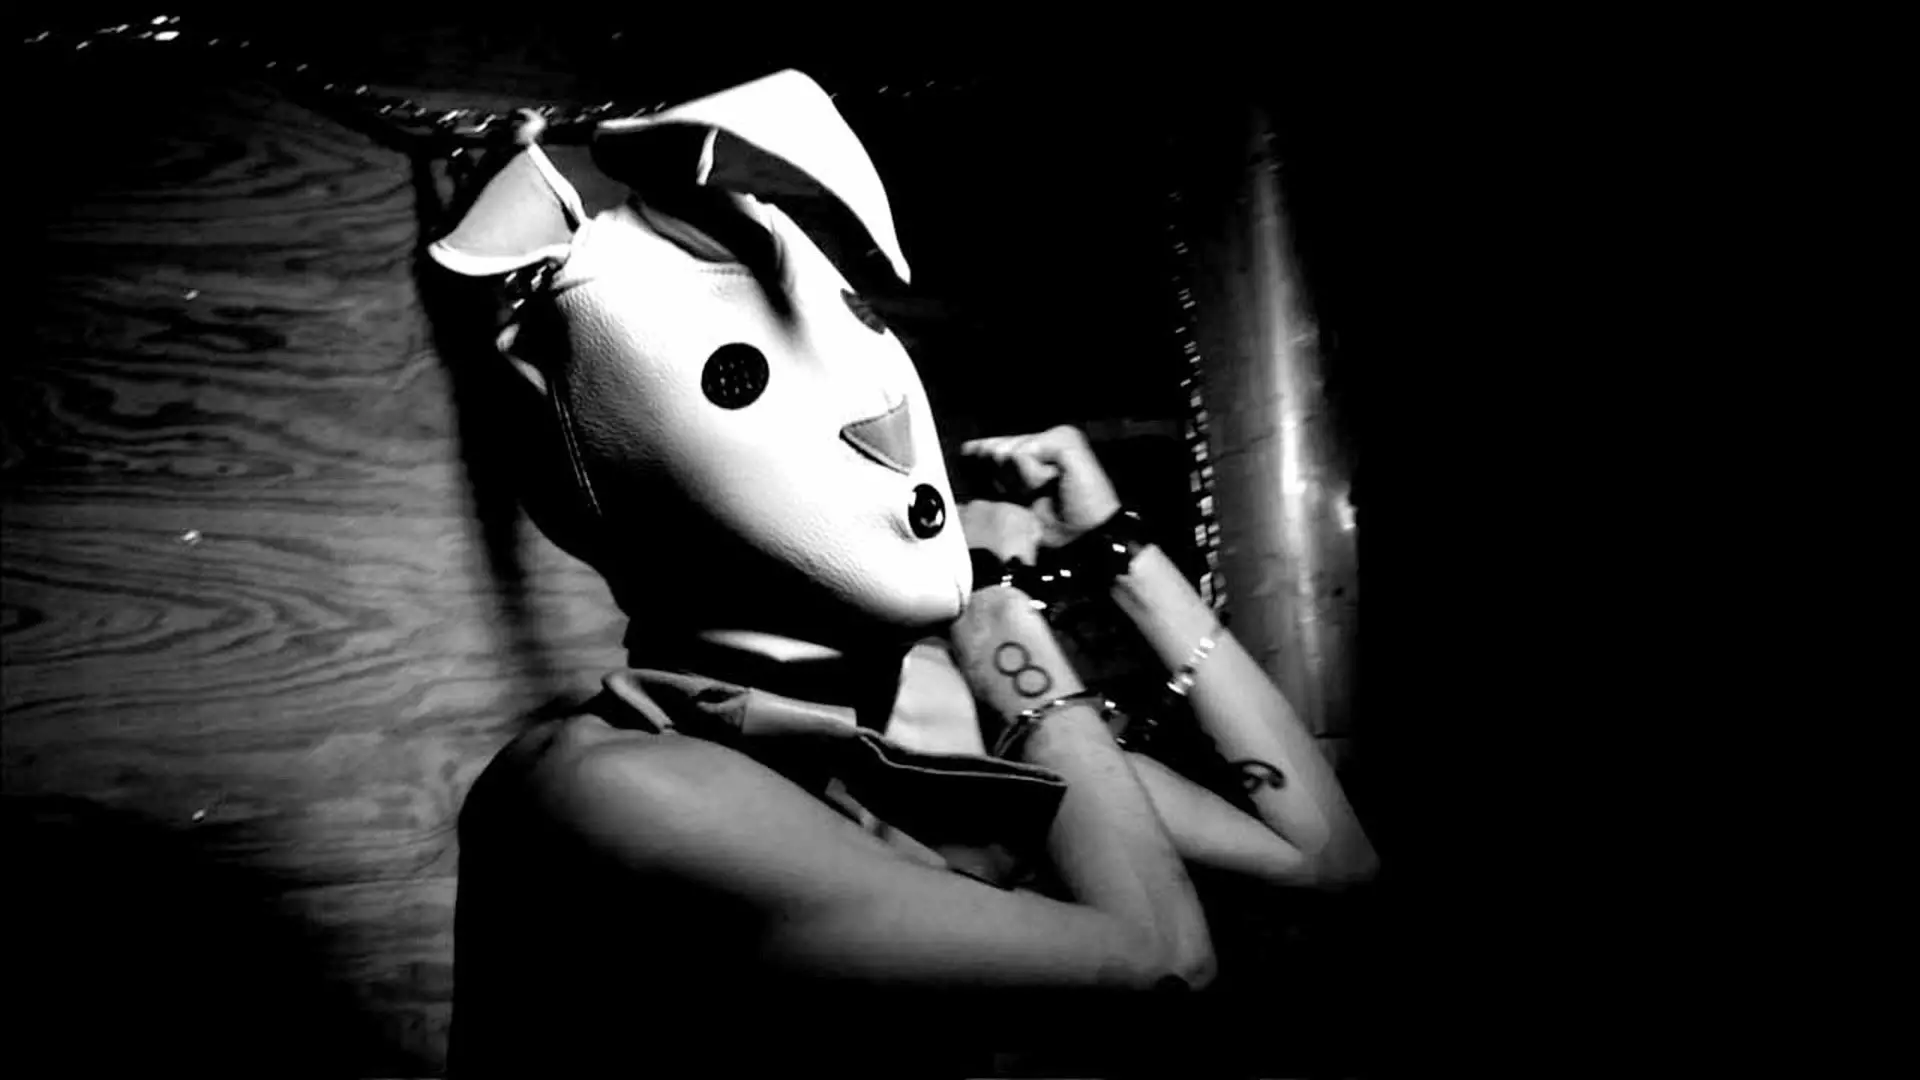 زنی با نقاب خرگوش و دستهای زنجیره شده در فیلم بازی بانی